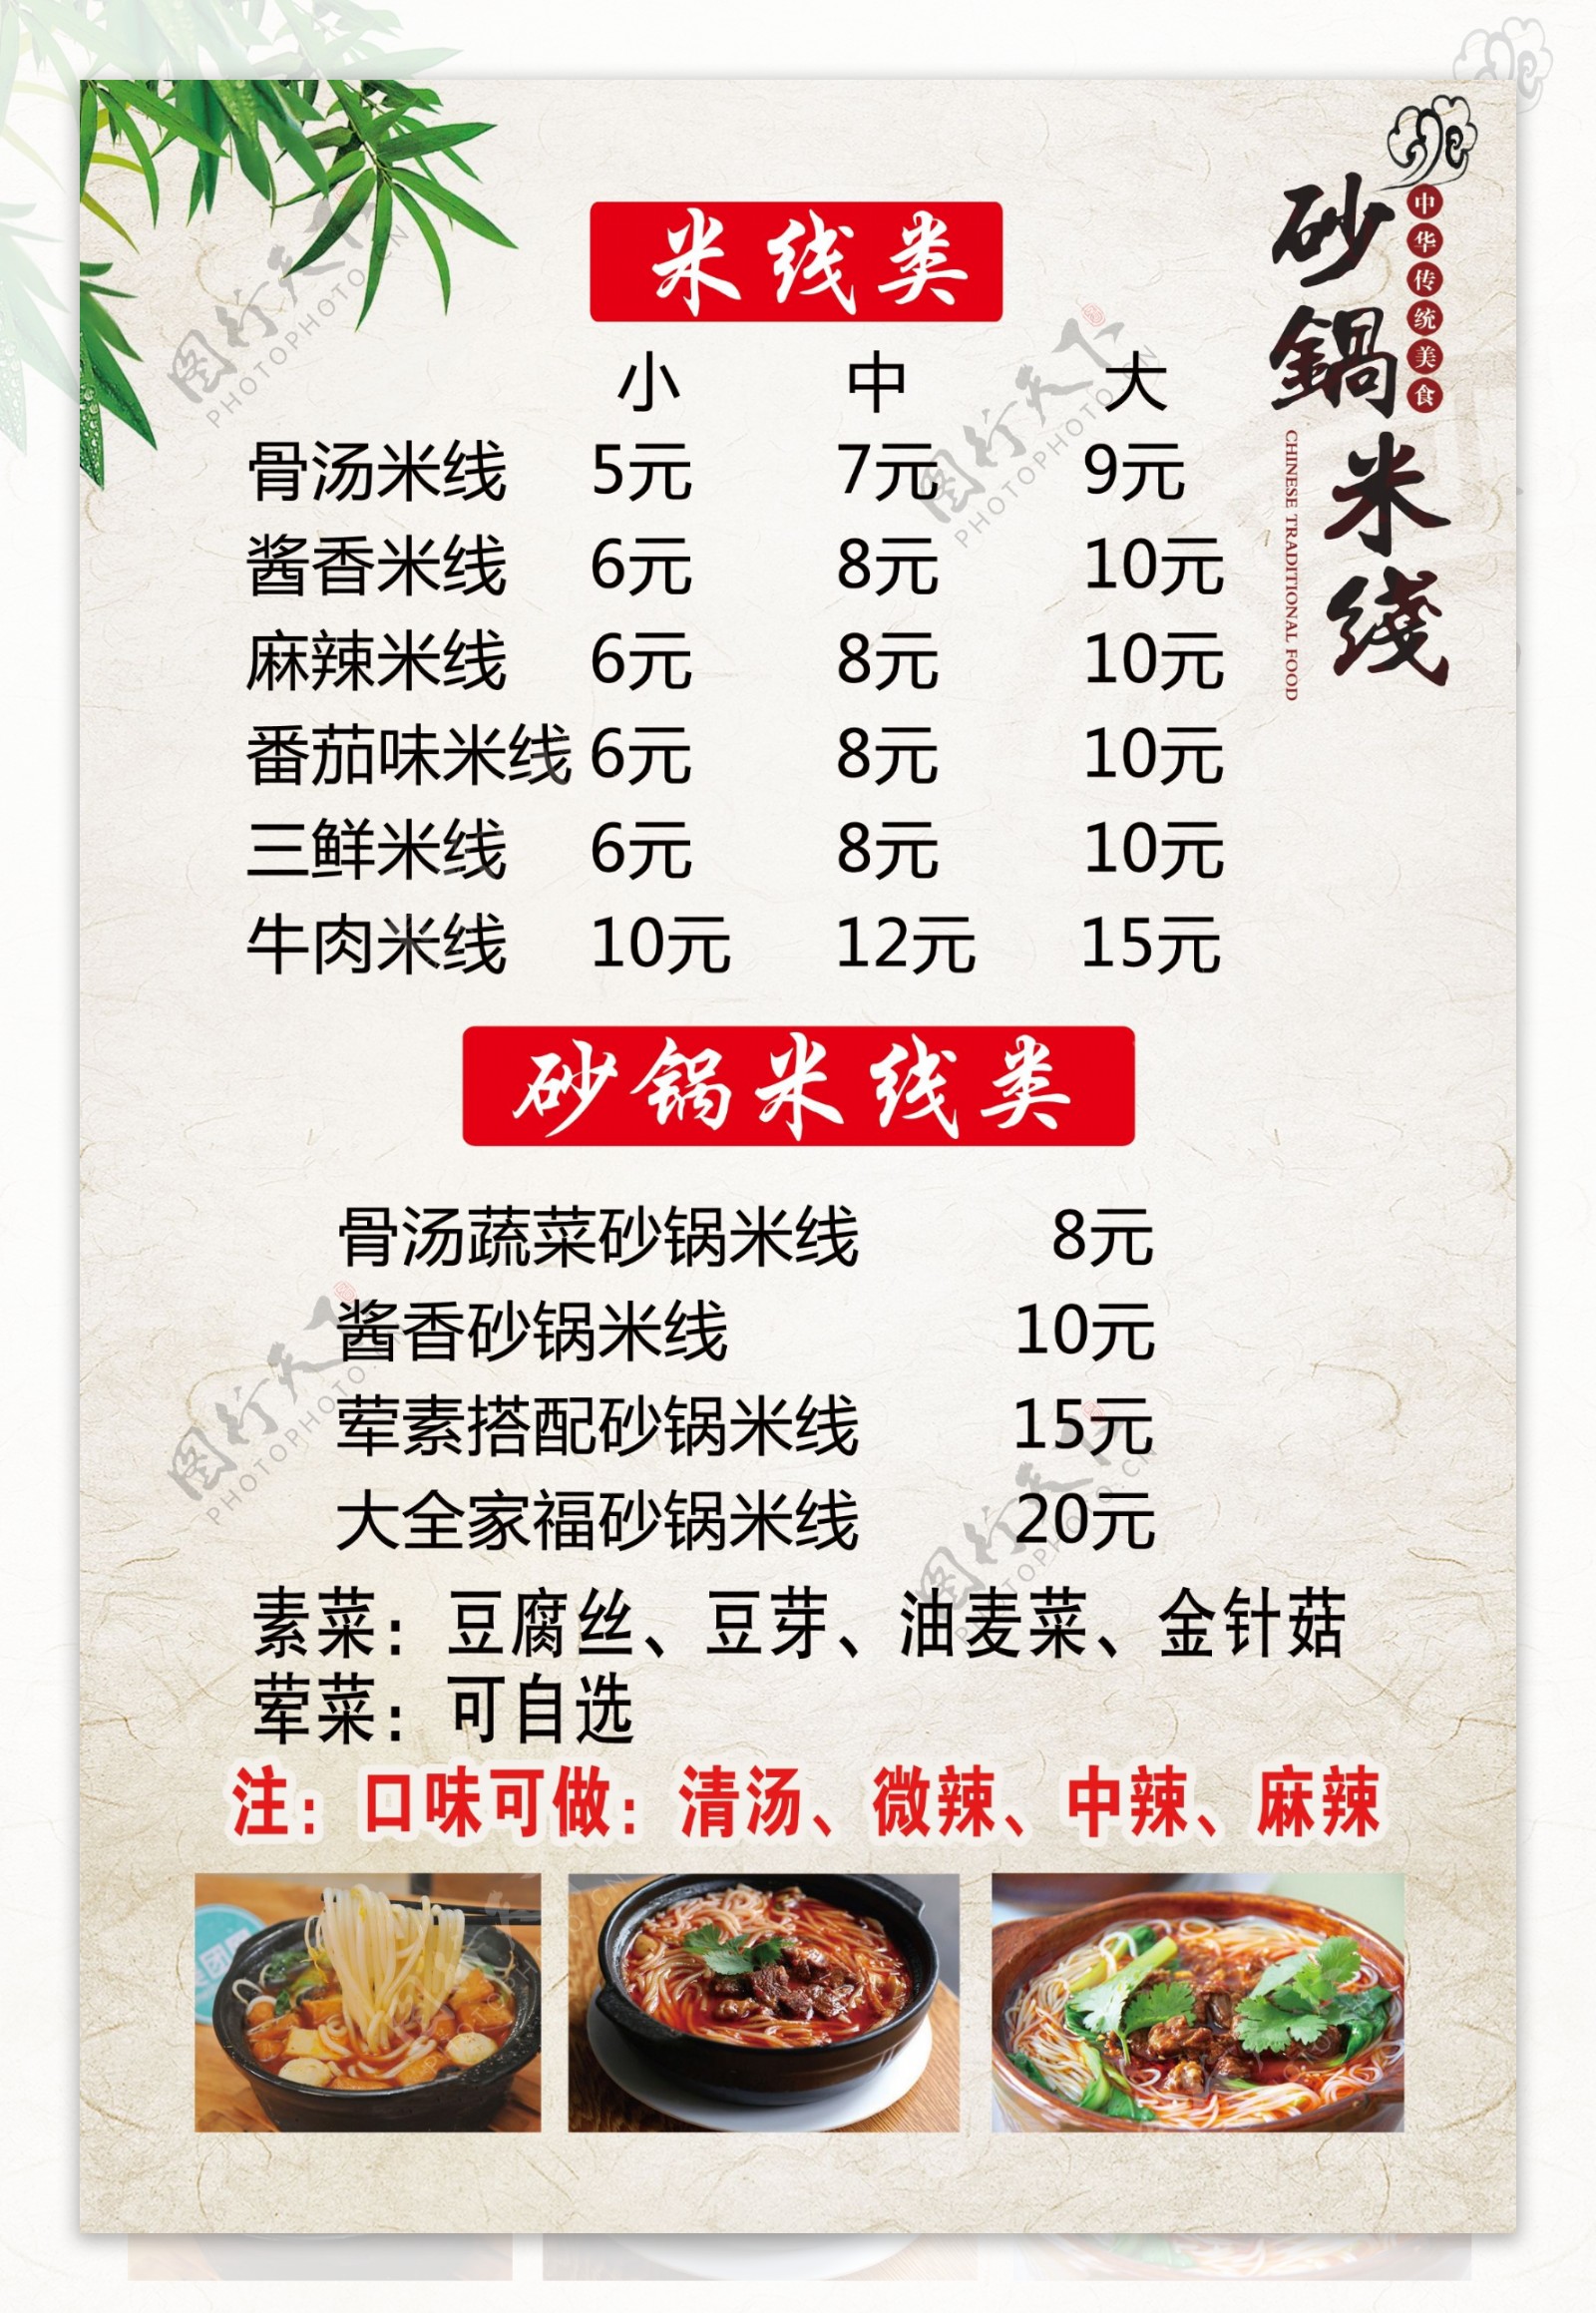 砂锅米线价格表菜单